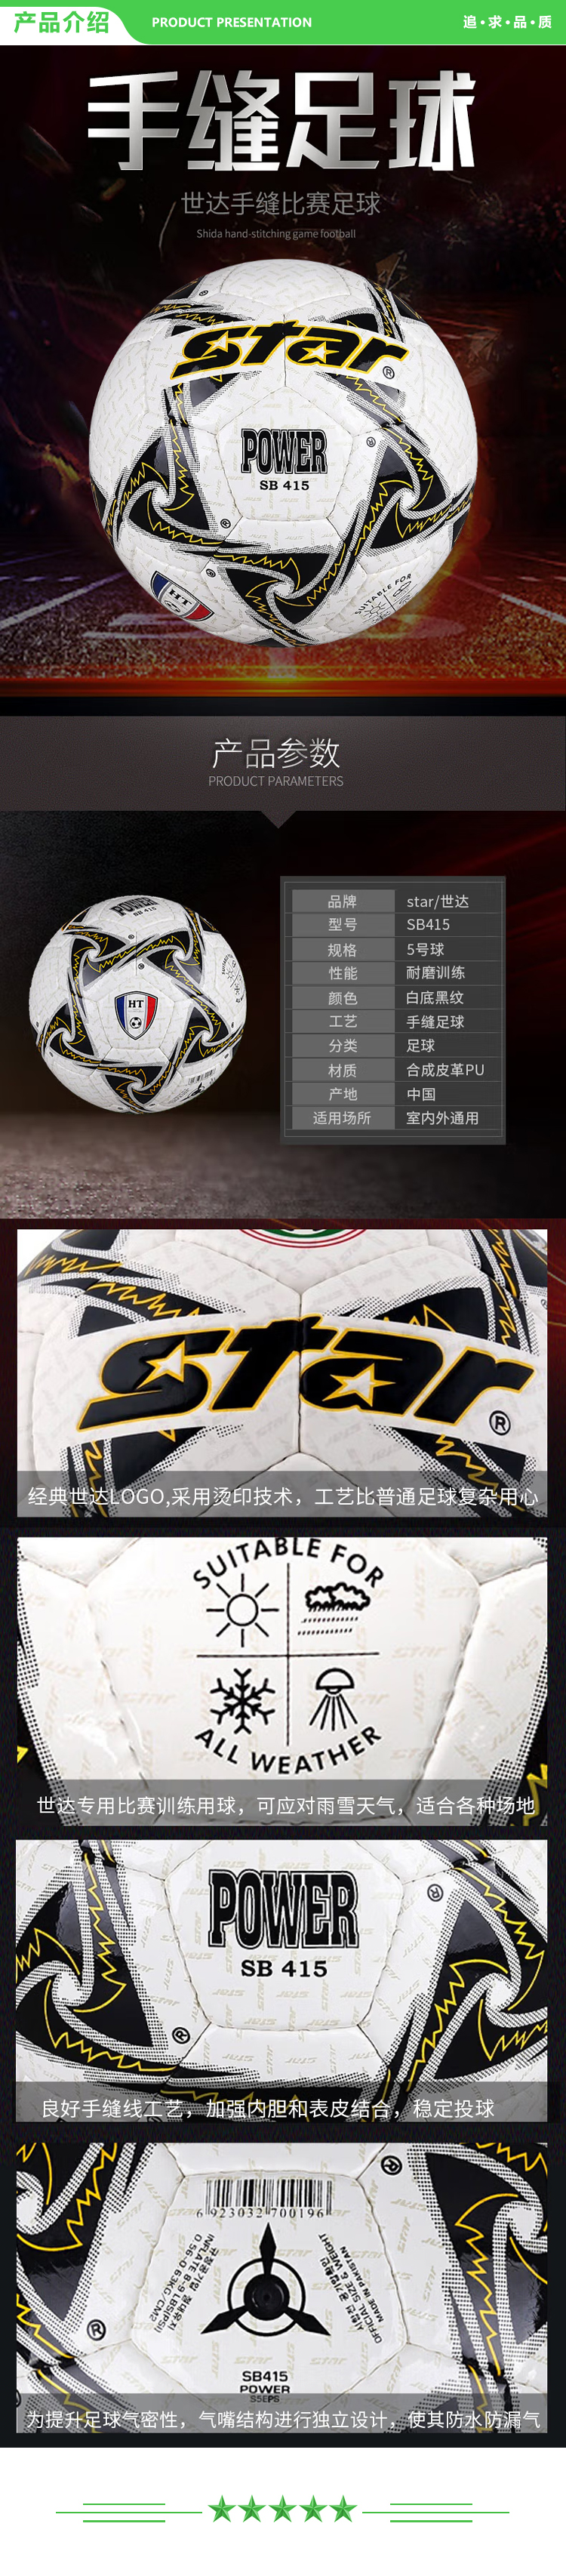 世达 star SB415 耐磨 PU 手缝 5号 比赛用 足球   2.jpg